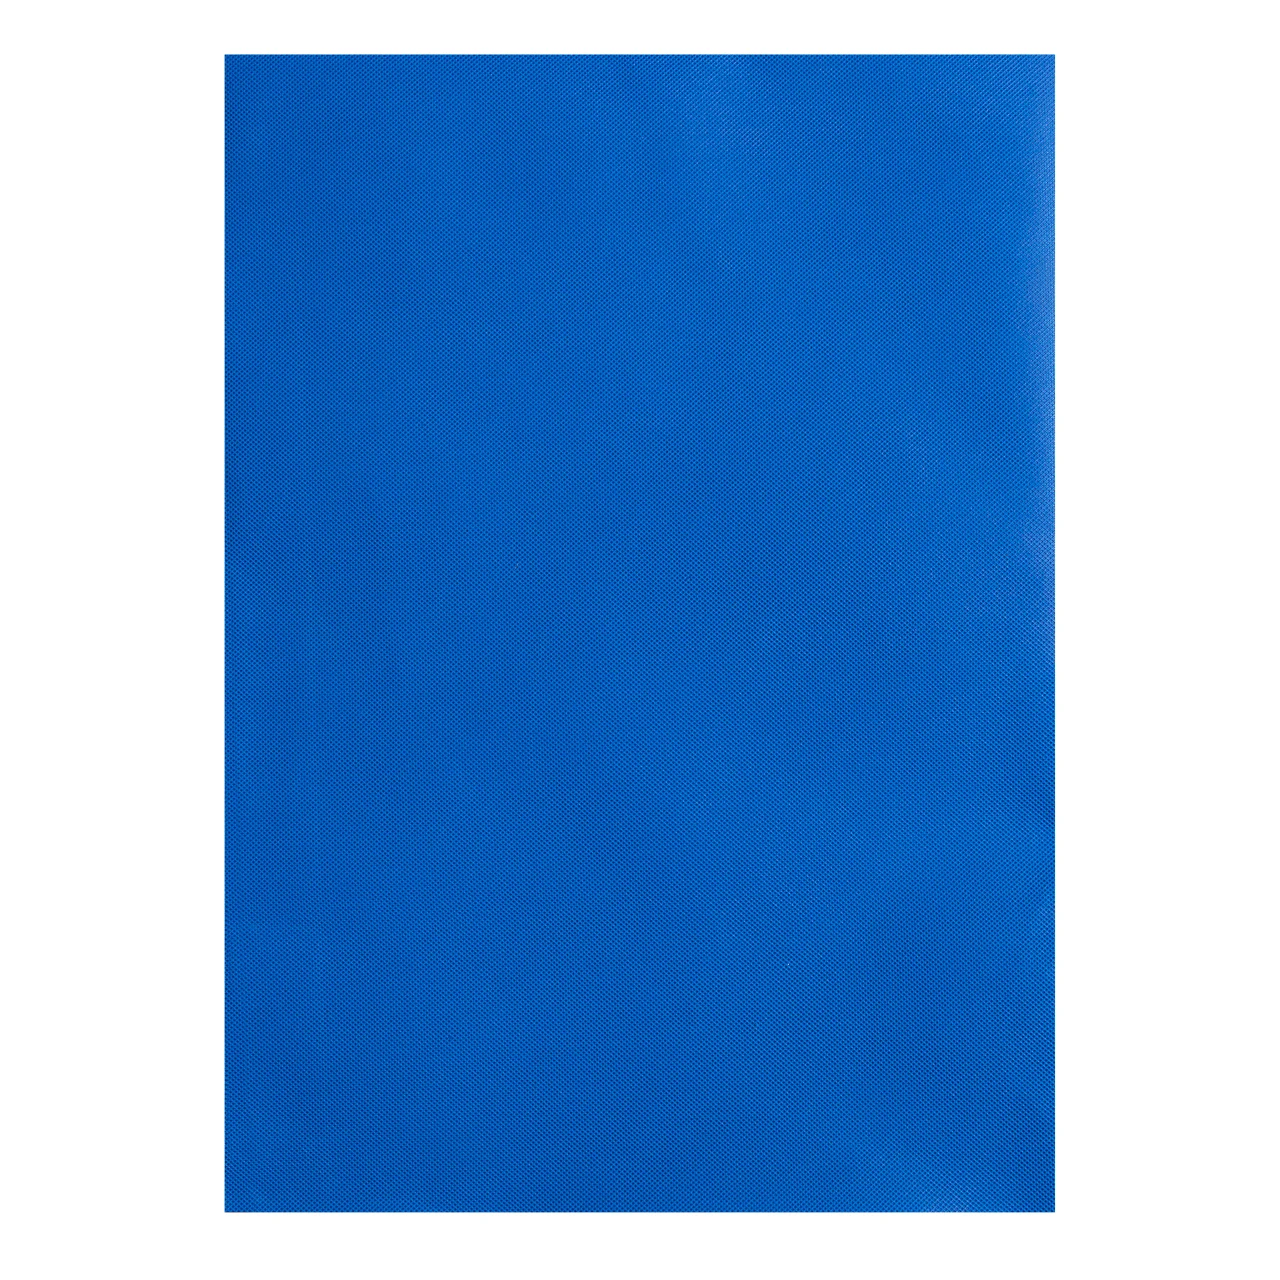 Одноцветная стойка с фоном виниловая камера фотостудия фон для фотосъемки фото студия необходимо - Цвет: Синий